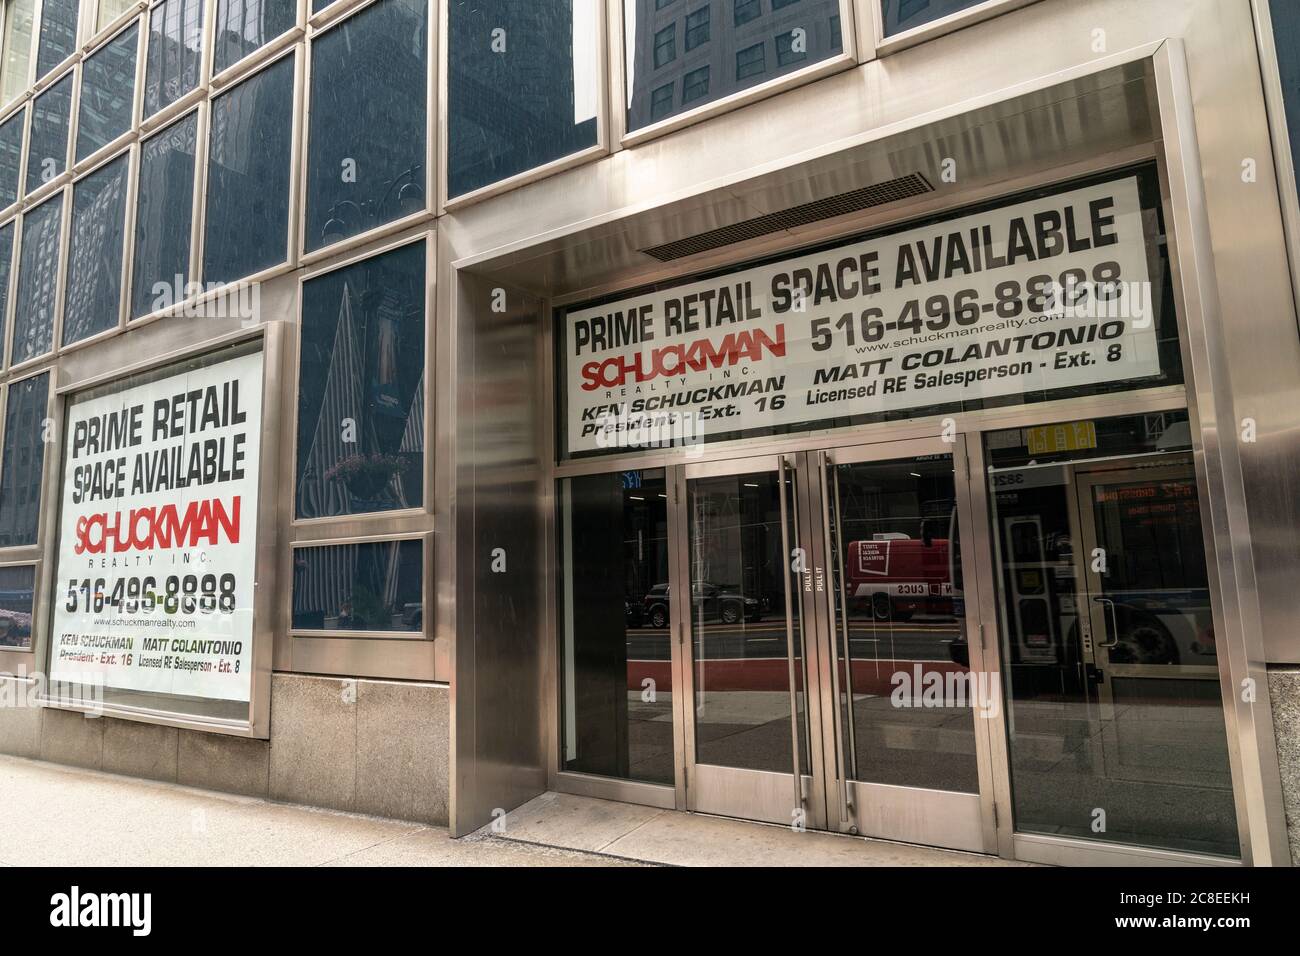 New York, NY - 23. Juli 2020: Da viele Geschäfte während der COVID-19 Pandemie geschlossen wurden, gibt es in New York City viele verfügbare Gewerbeflächen zur Miete Stockfoto